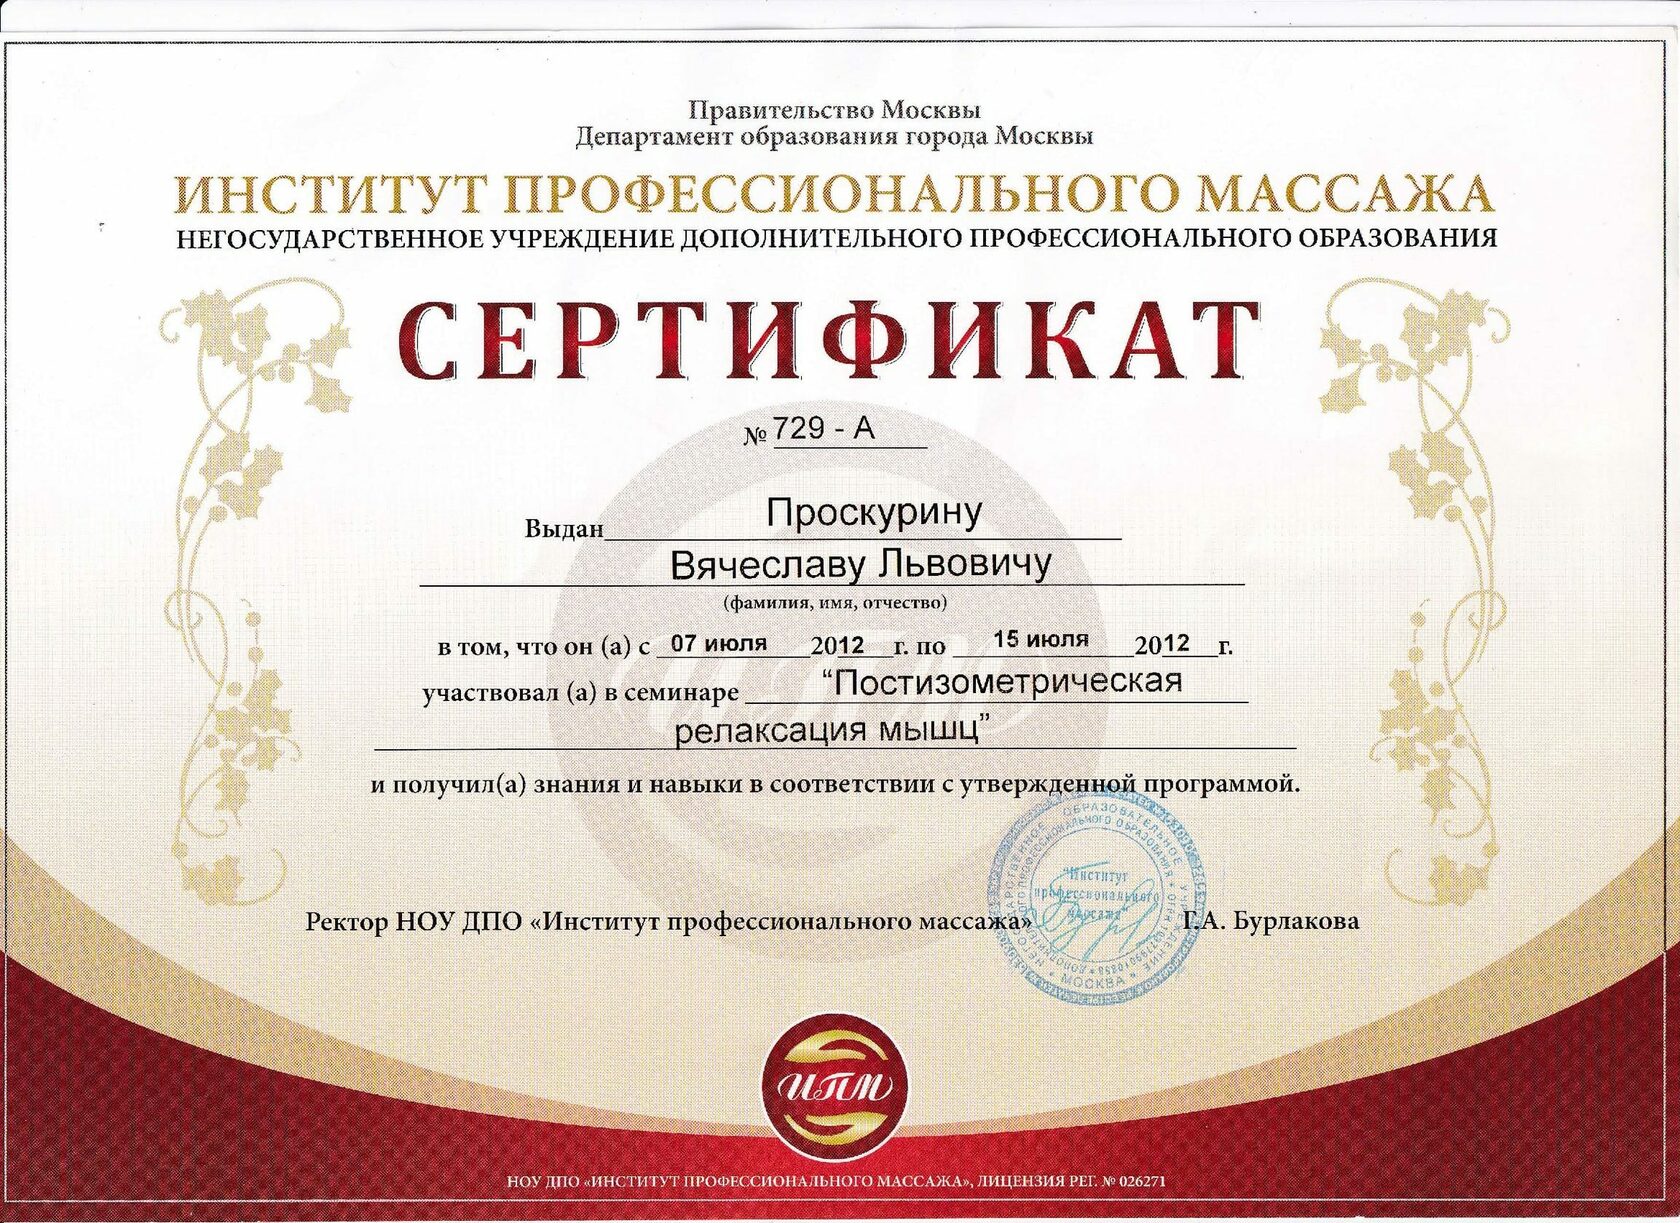 Курсы массажа в краснодаре с сертификатом государственного образца без медицинского образования